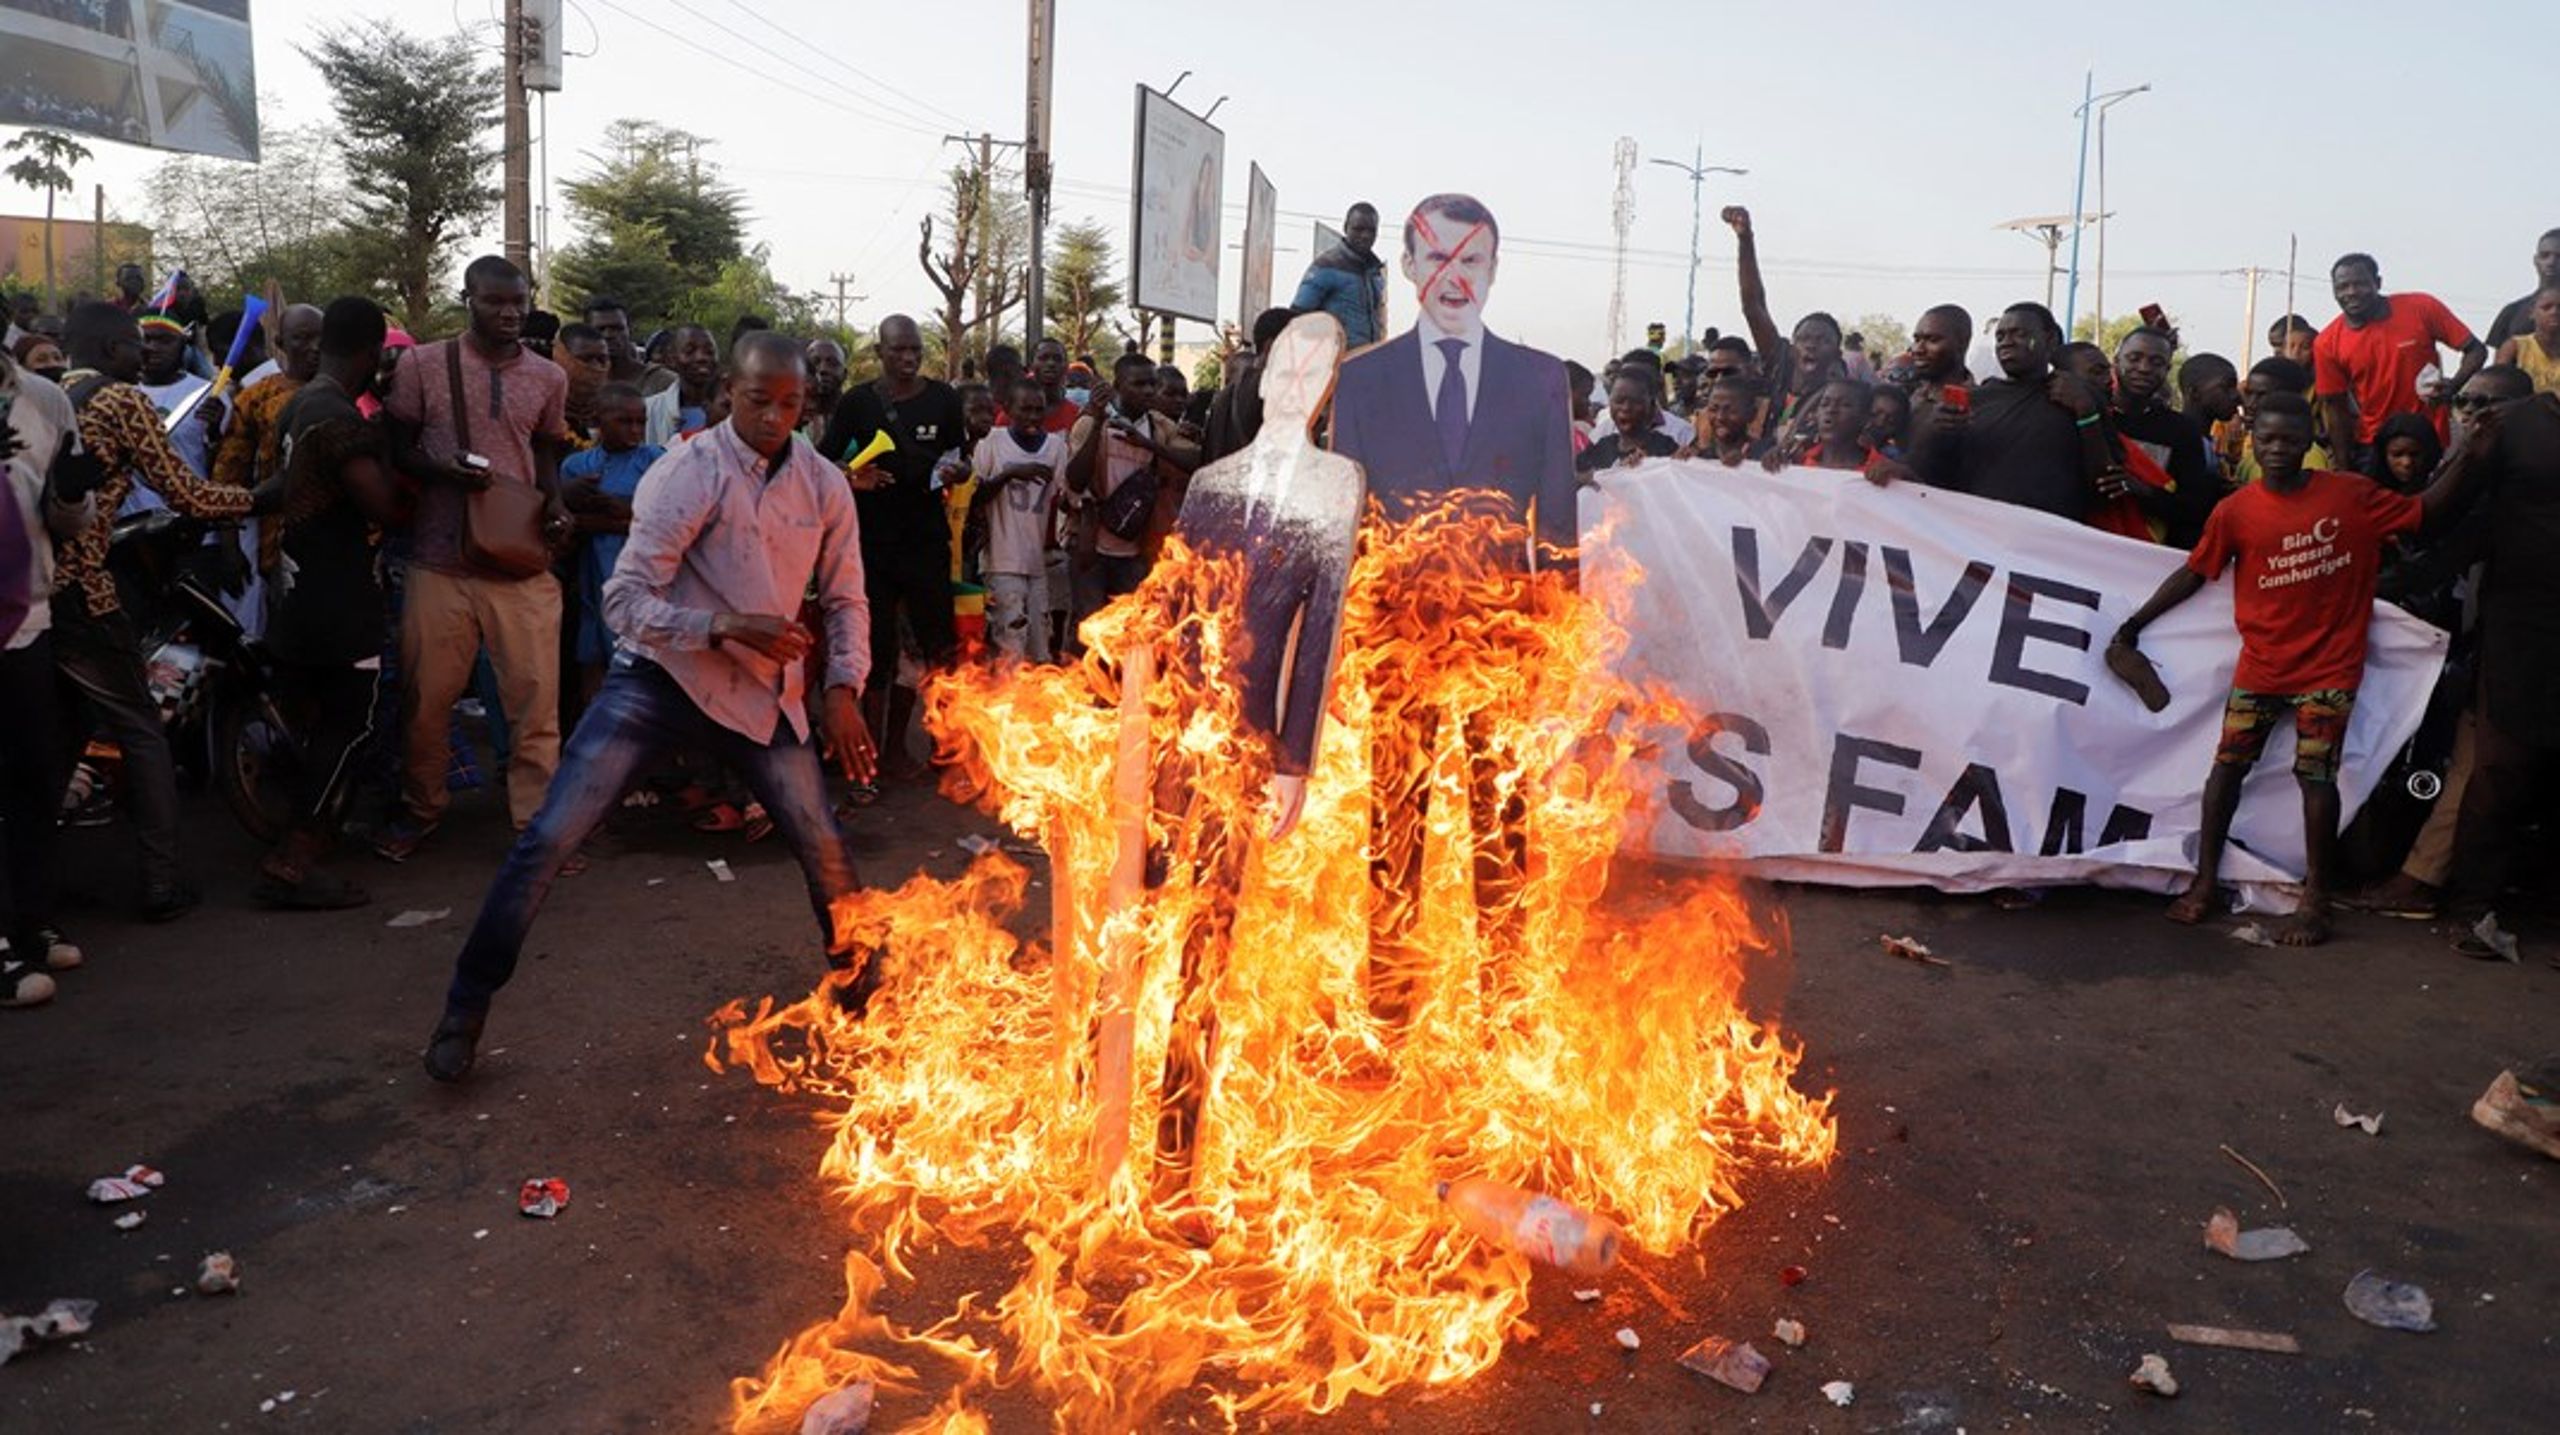 I Malis hovedstad Bamako brændte vrede demonstranter i februar 2022 billeder af den franske præsident Macron af i protest mod fransk militærs tilstedeværelse i landet. Demonstrationerne er kun en minimal brøkdel af de spændinger og konflikthændelser, som gør landet så farligt for udviklingsarbejde, at danske KULU ikke har været på besøg hos deres partnere i landet i årevis. Men under de vilkår - i Mali og andre konfliktramte lande, hvordan kan man så overhovedet arbejde som udviklings-ngo?&nbsp;